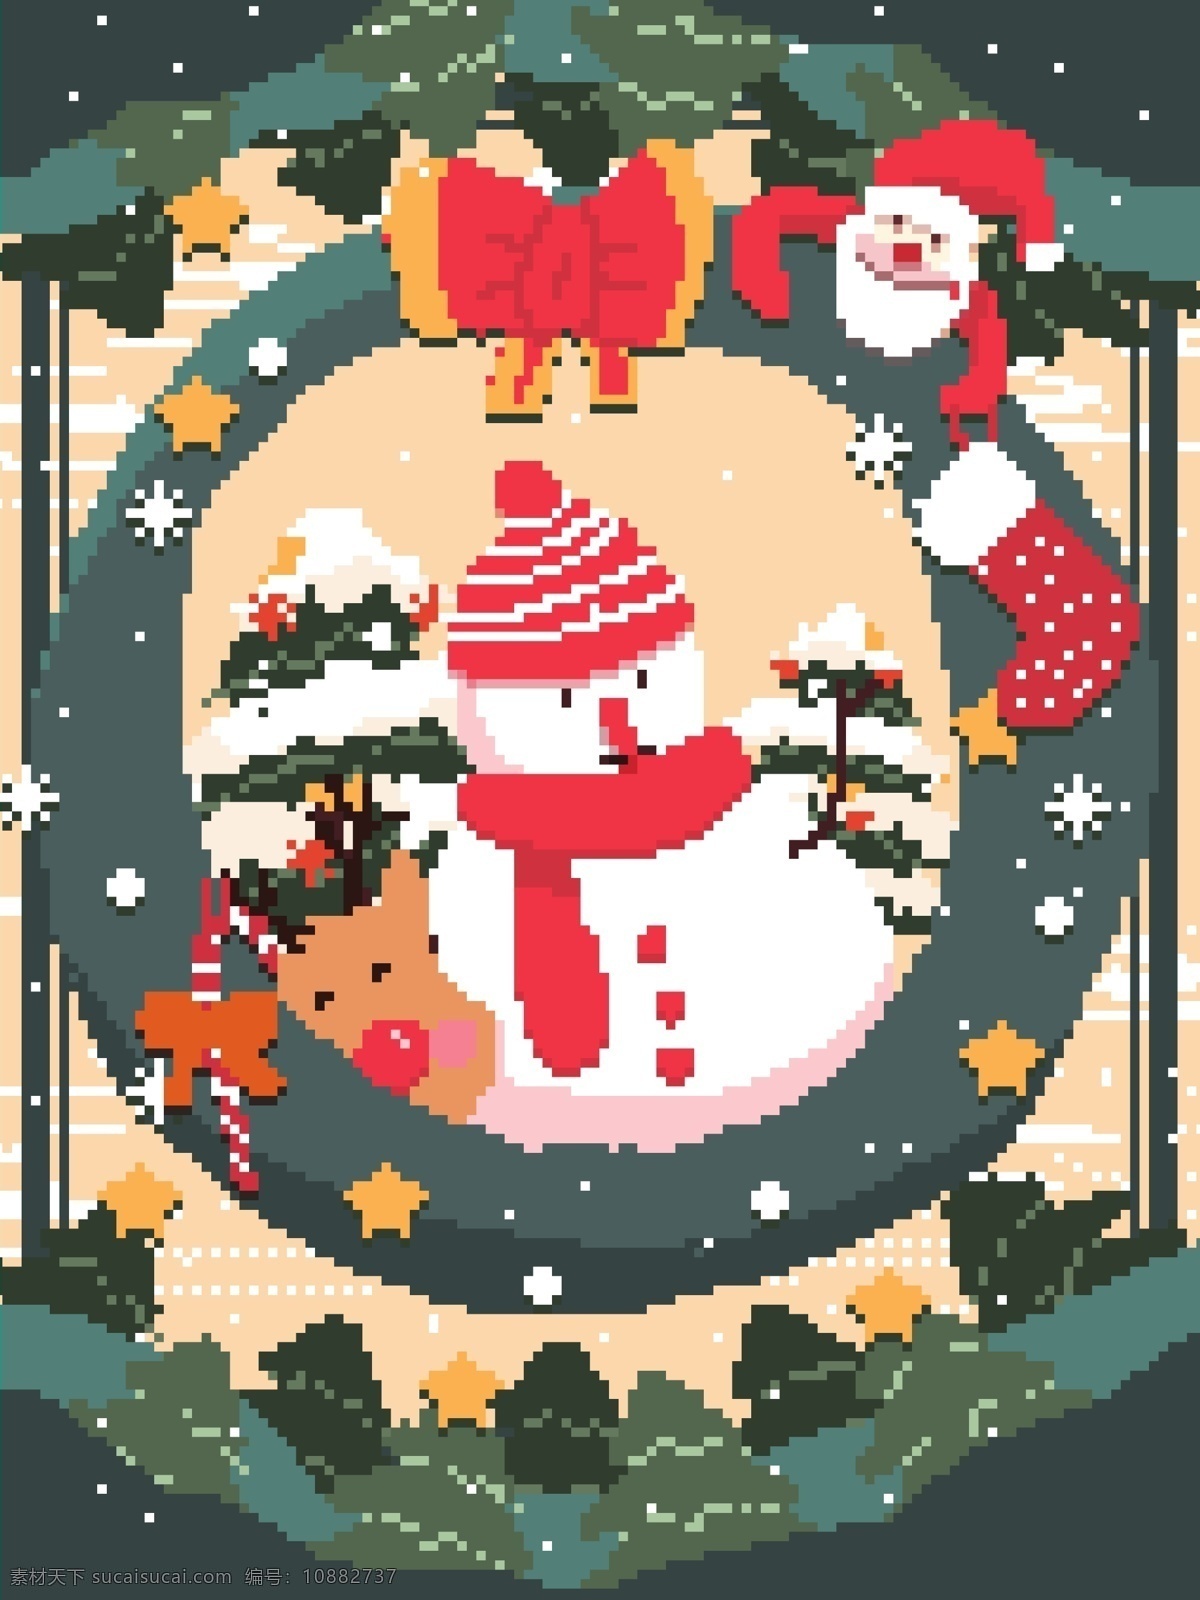 圣诞节 圣诞老人 复古 素风 插画 配 图 壁纸 背景 雪花 节日 雪人 麋鹿 路 雪橇 圣诞树 下雪 冬天 像素 像素画 像素风 配图 启动页